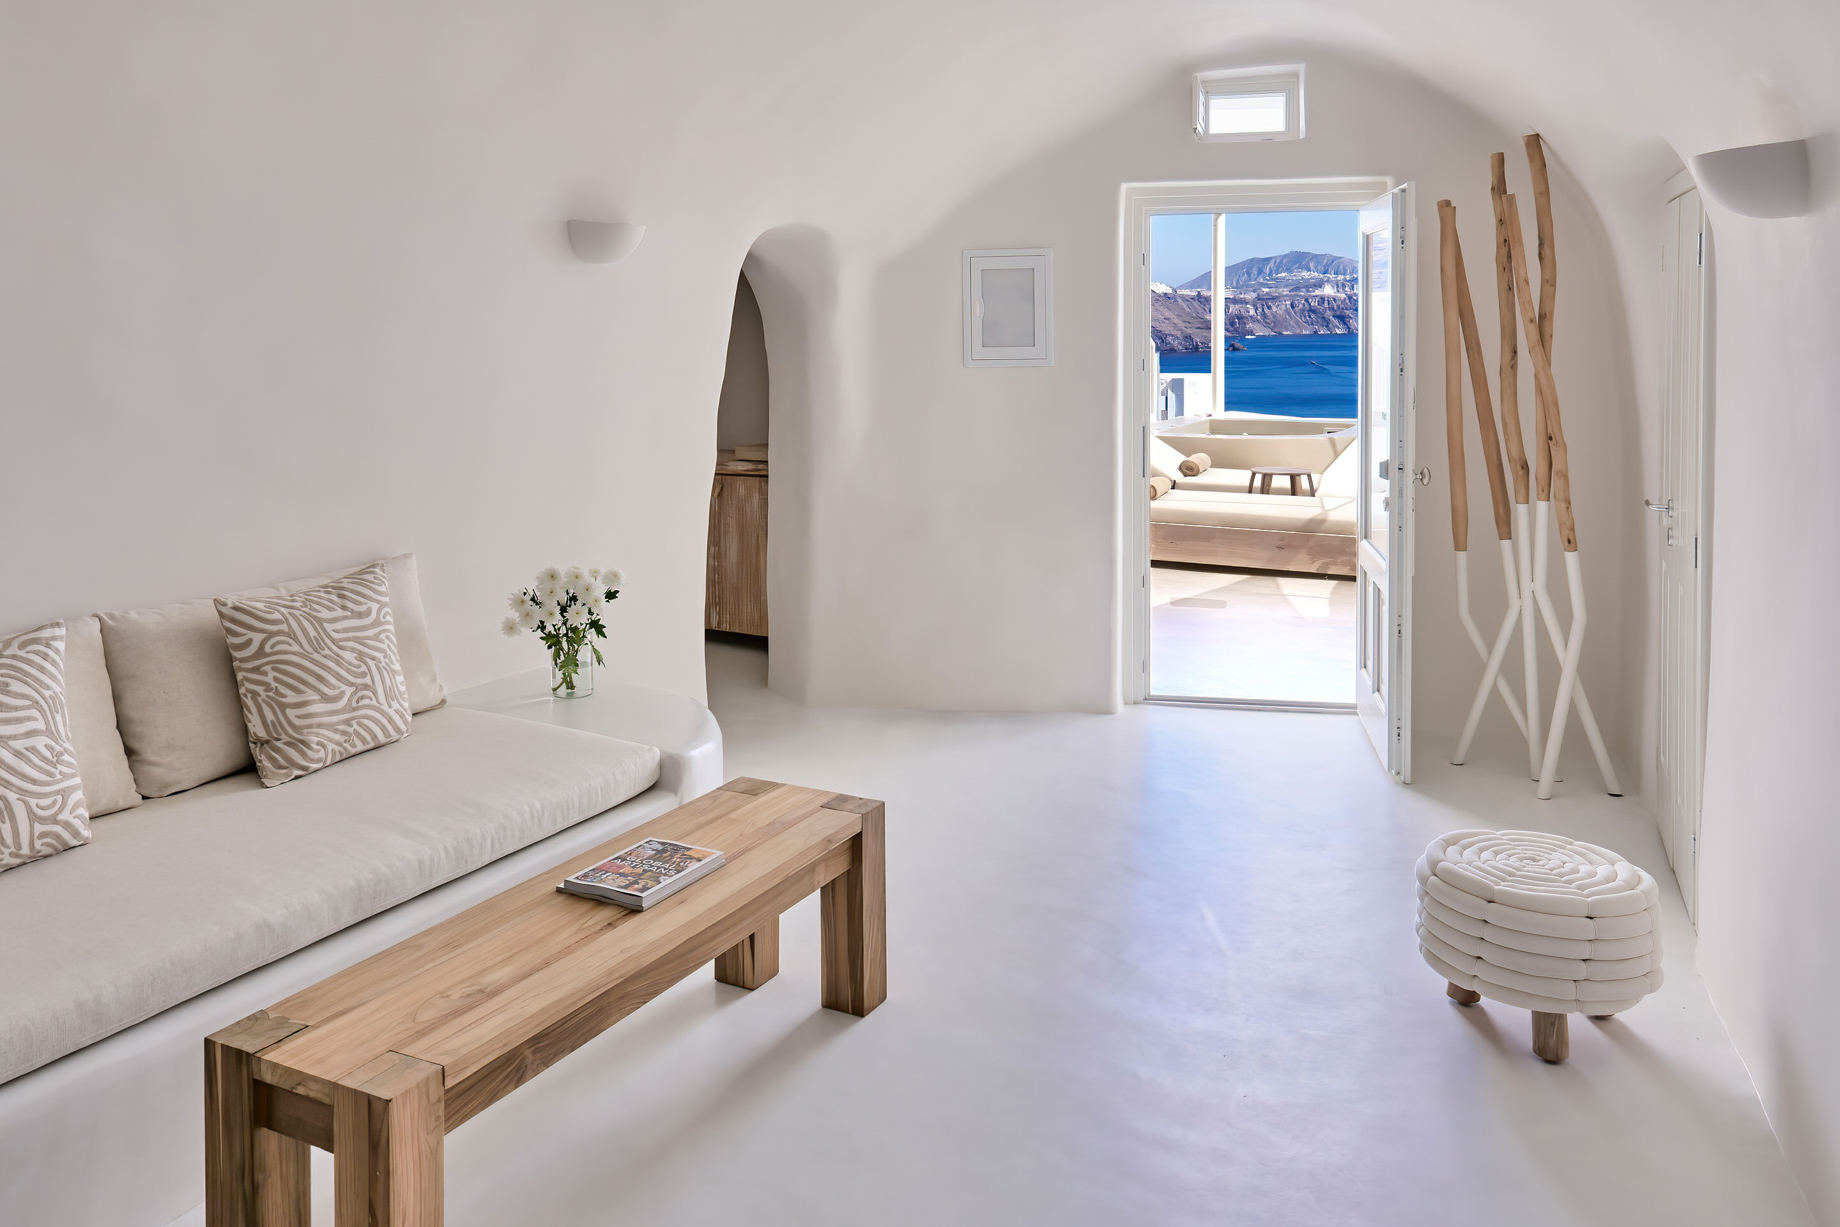 Mystique Hotel Santorini – Oia, Santorini Island, Greece – Wet Allure Suite